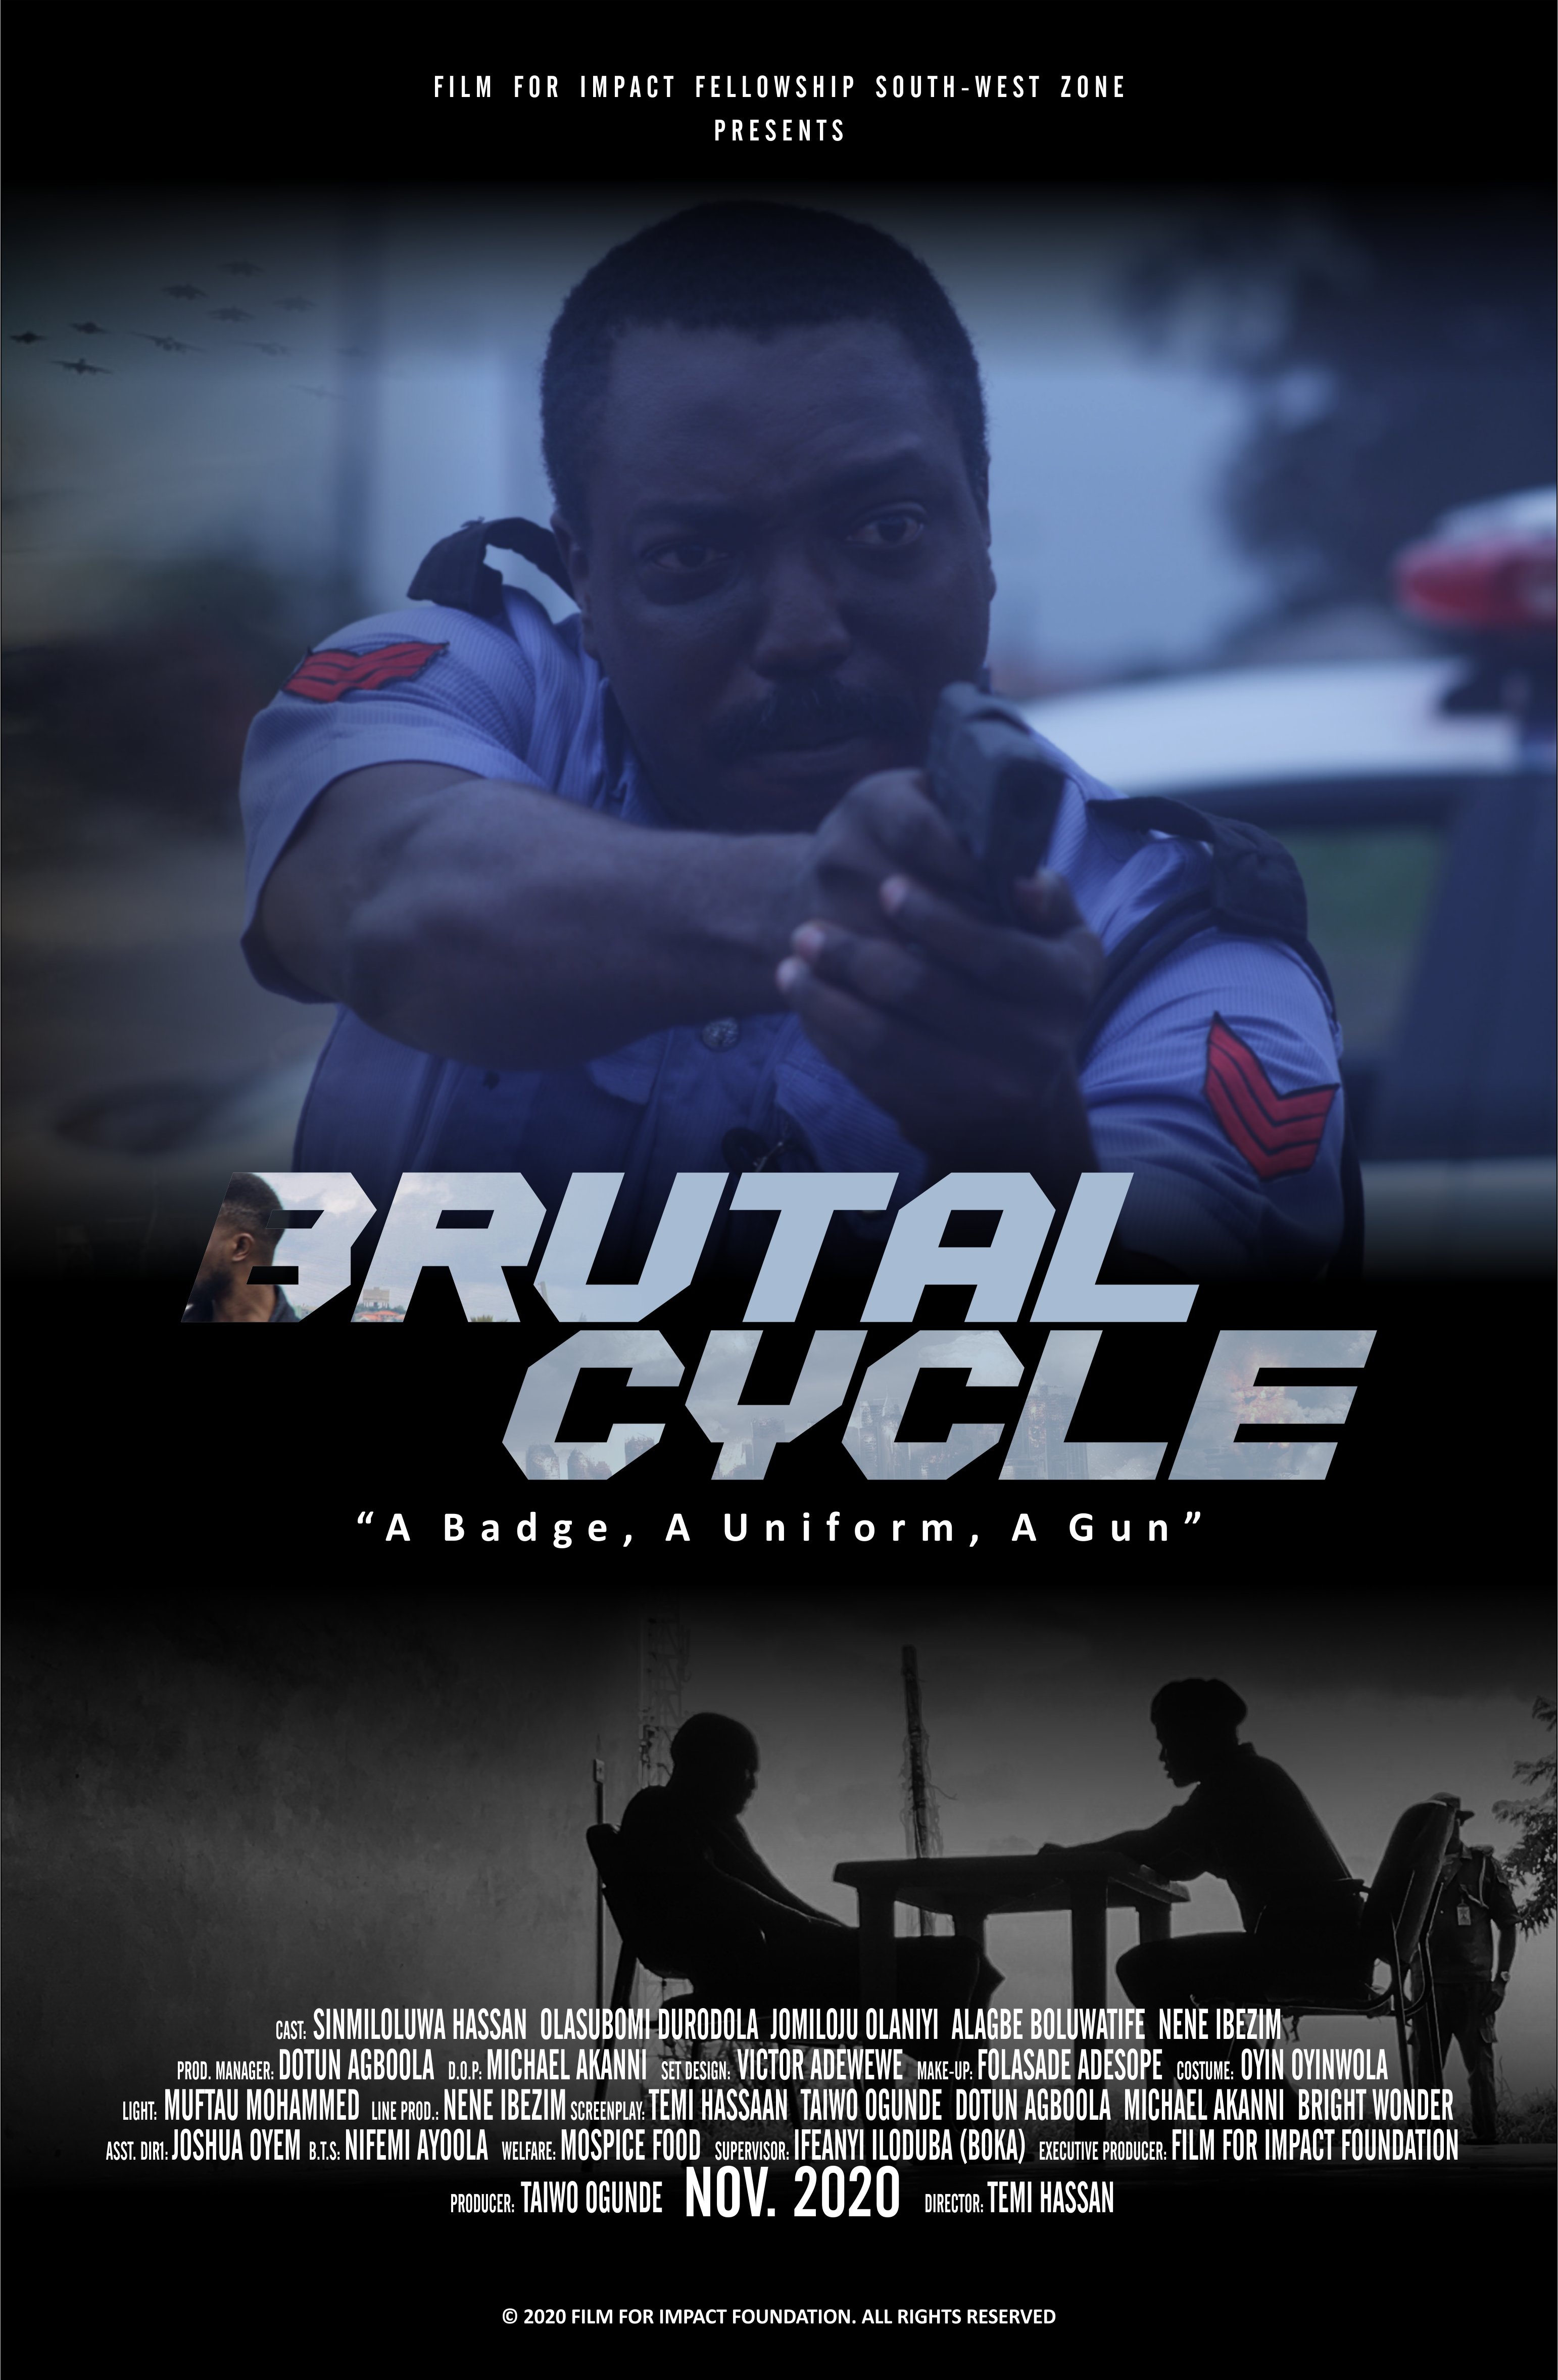 4-BRUTAL CYCLE